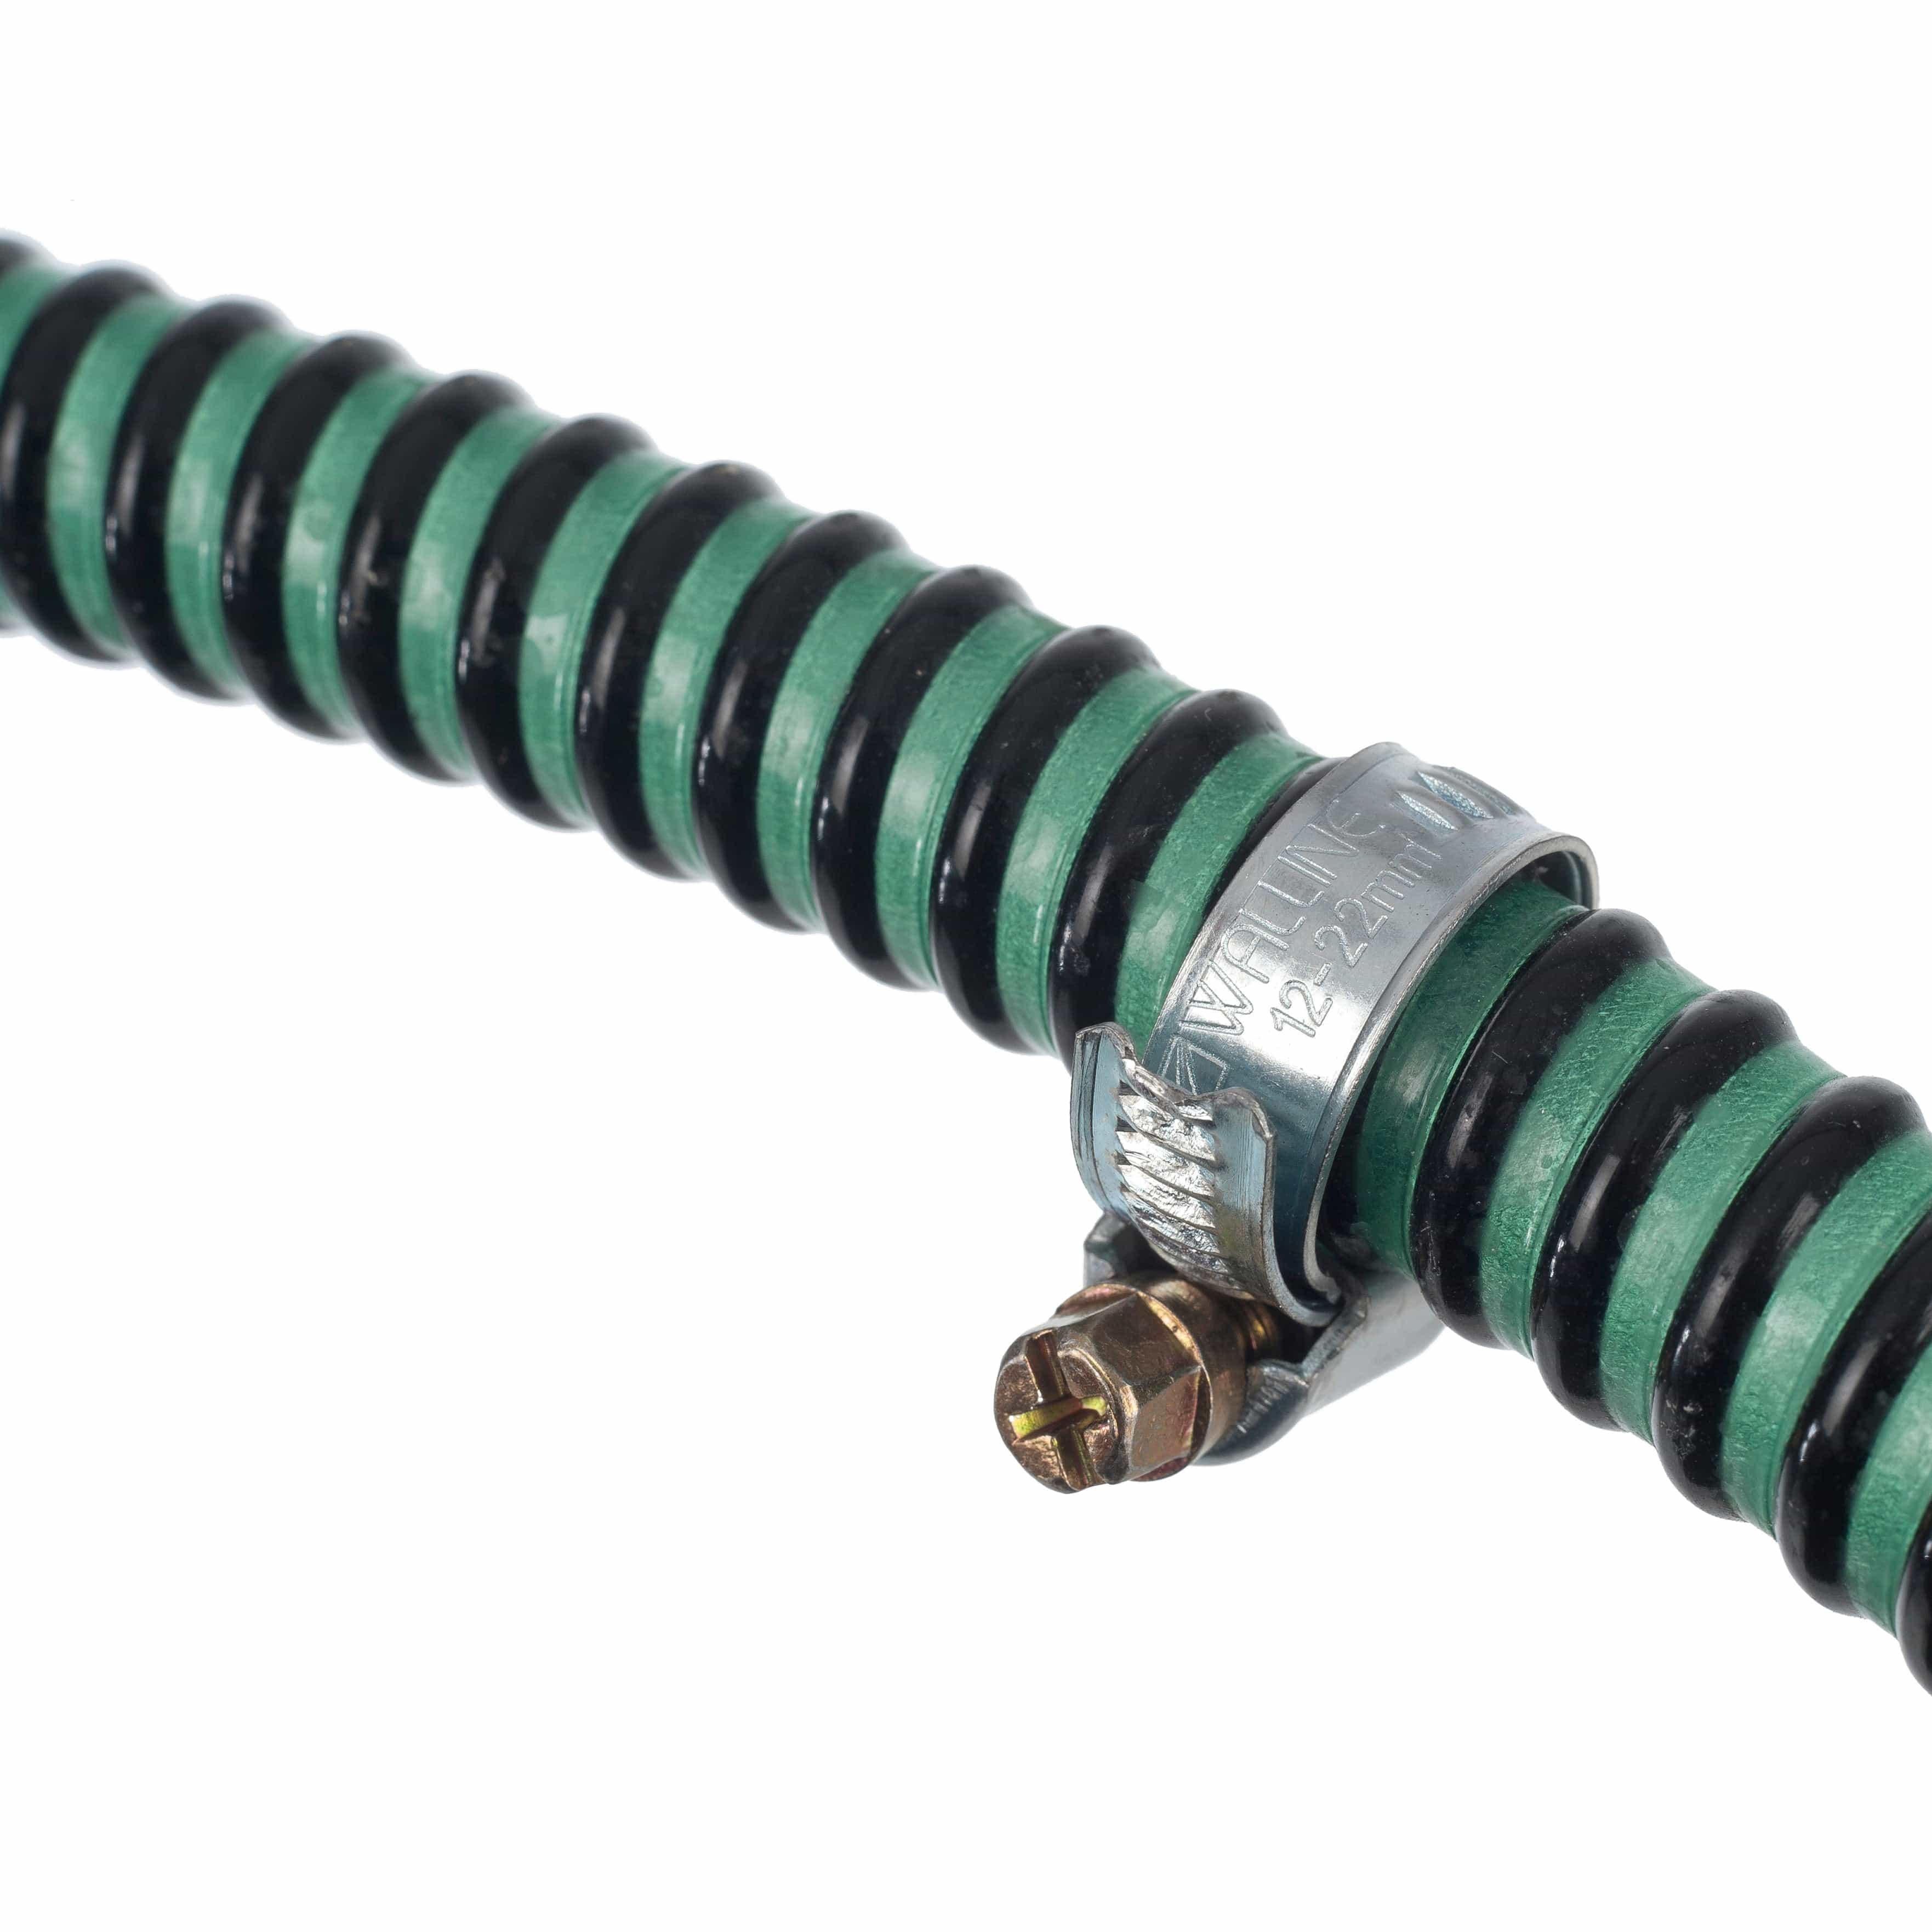 PONDSHOPI UBBINK Colliers de serrage galvanisés pour tuyaux lisses et légers - Ø25 mm - 2 x 8711465101196 1510119